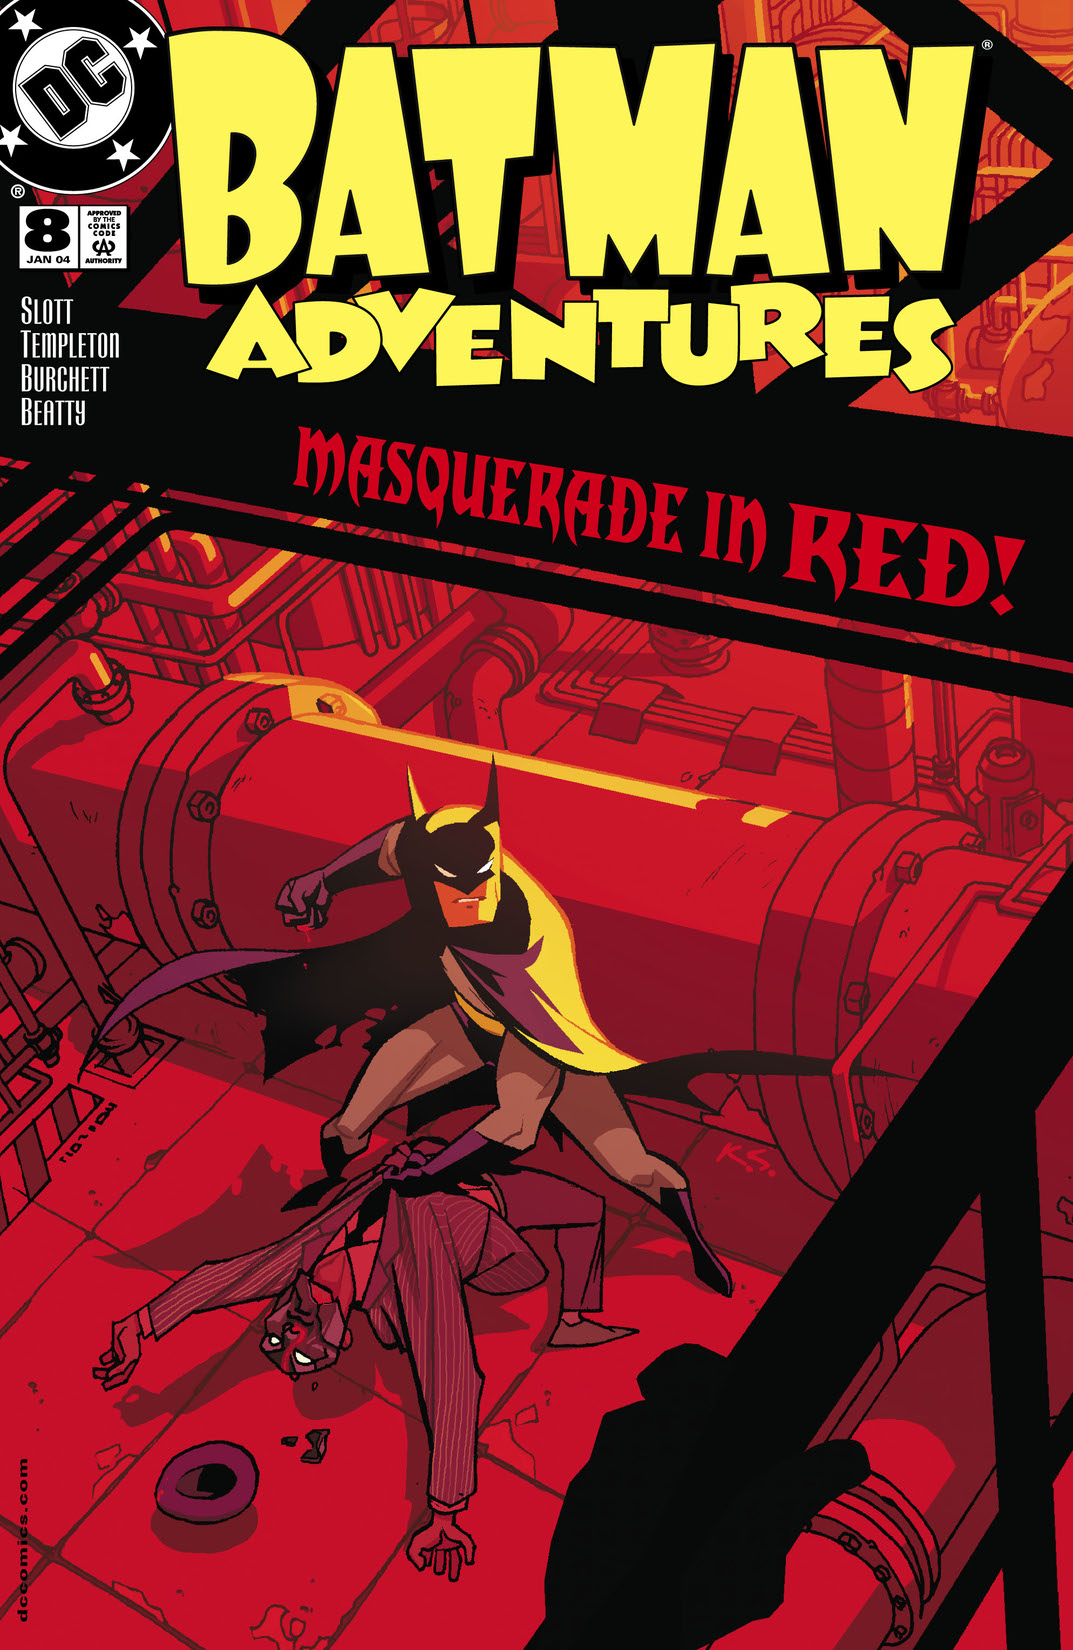 Batman Adventures #8 preview images